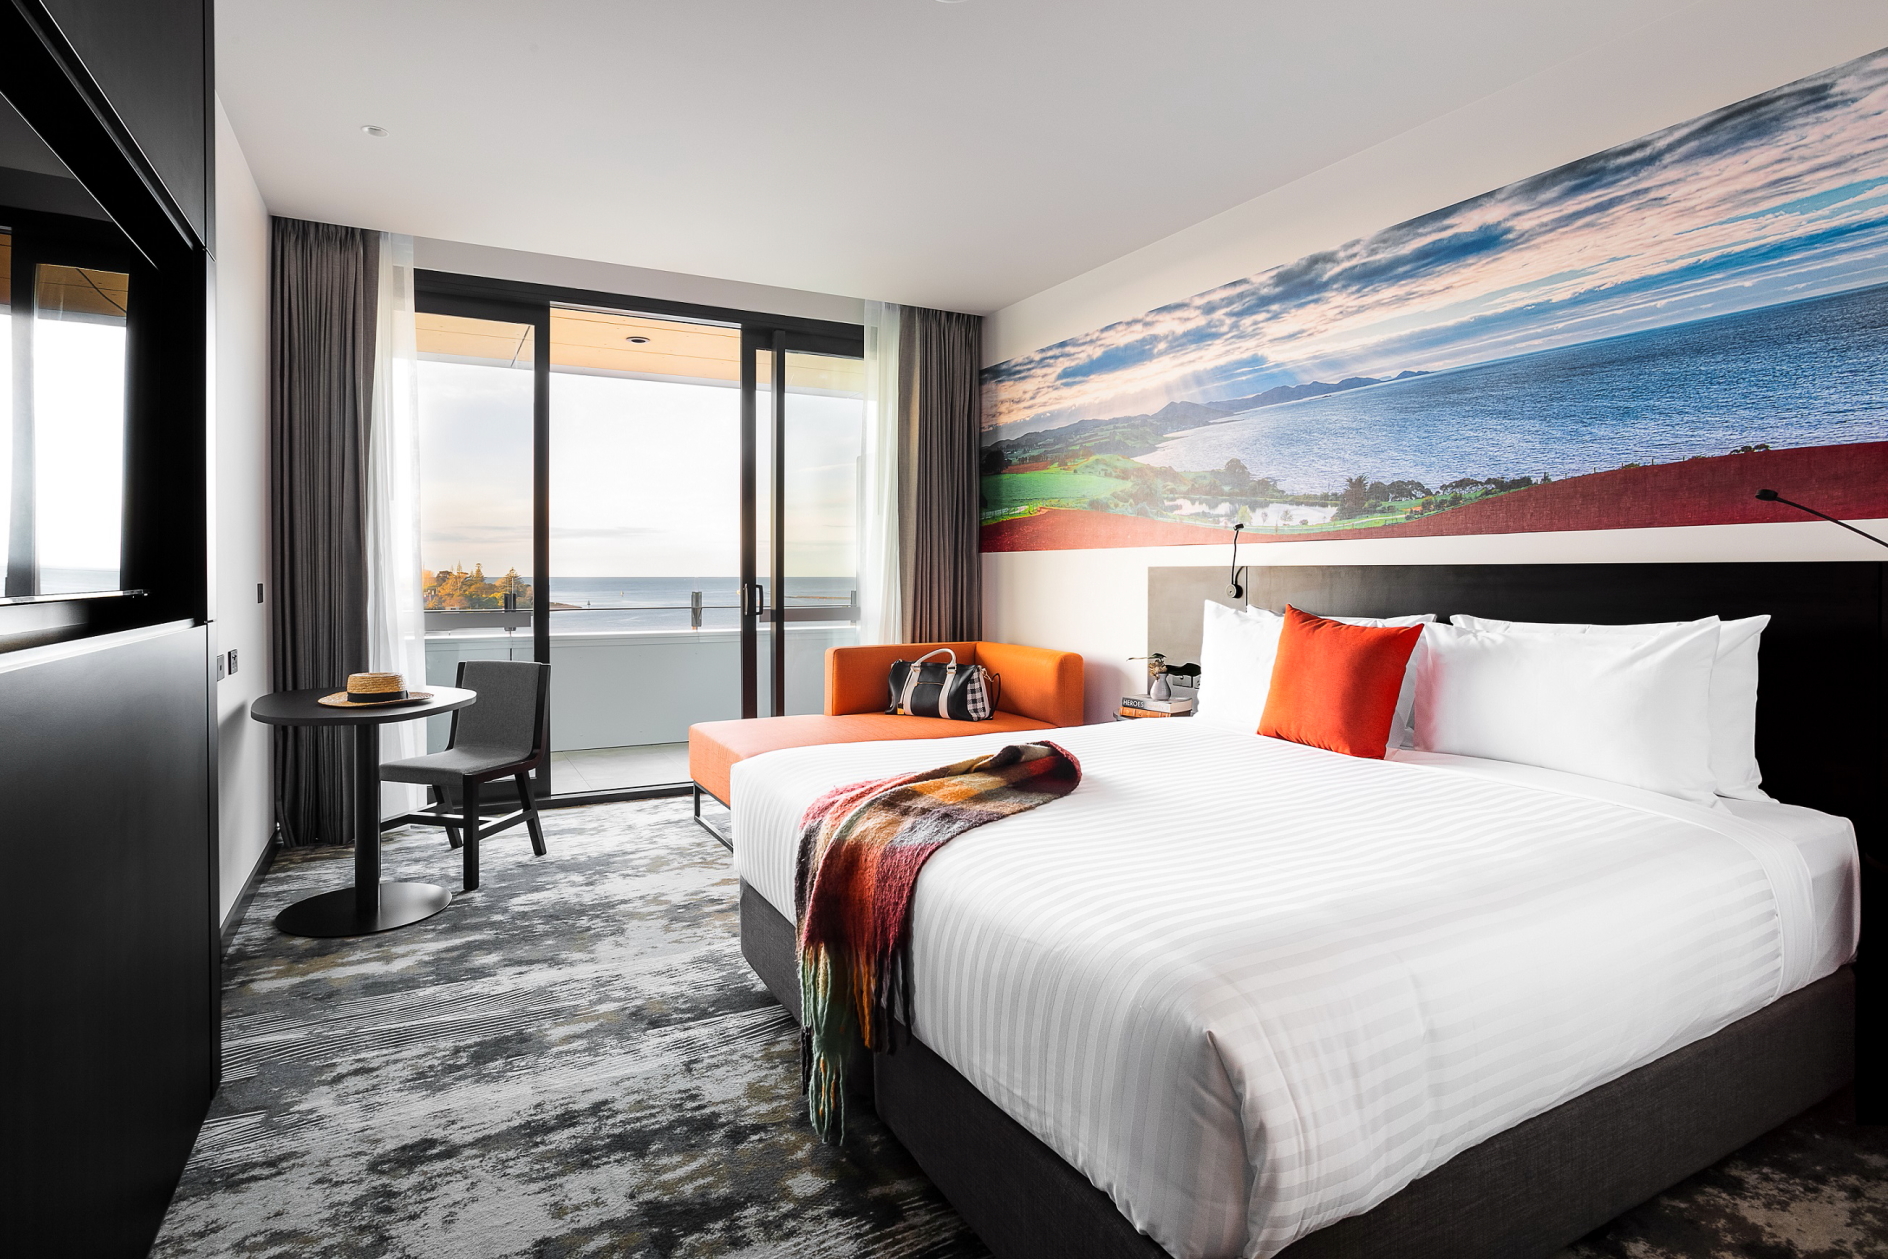 Novotel Hotel Opens in Devonport, Tasmania